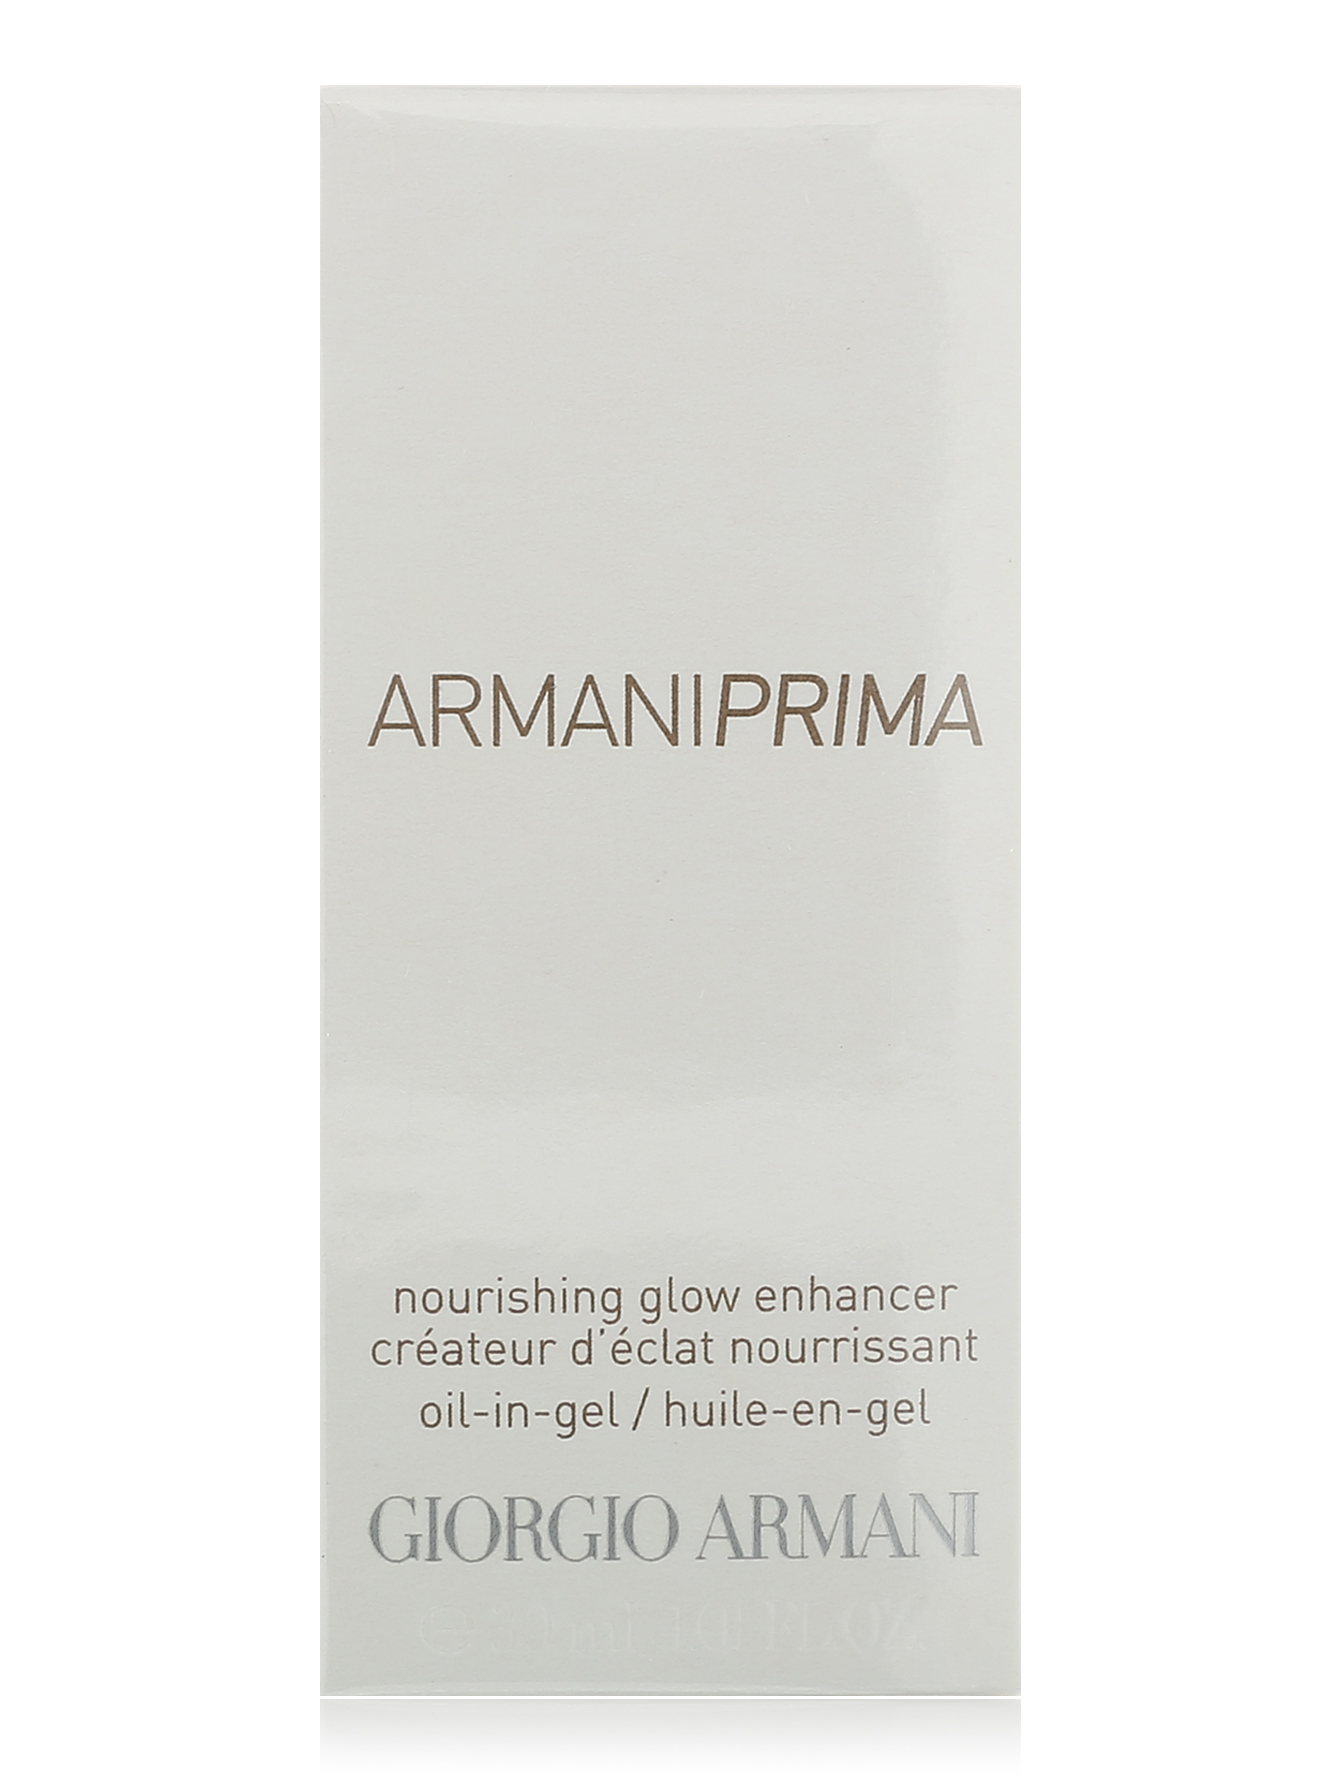  Гель-масло для лица - Armani Prima, 30ml - Общий вид